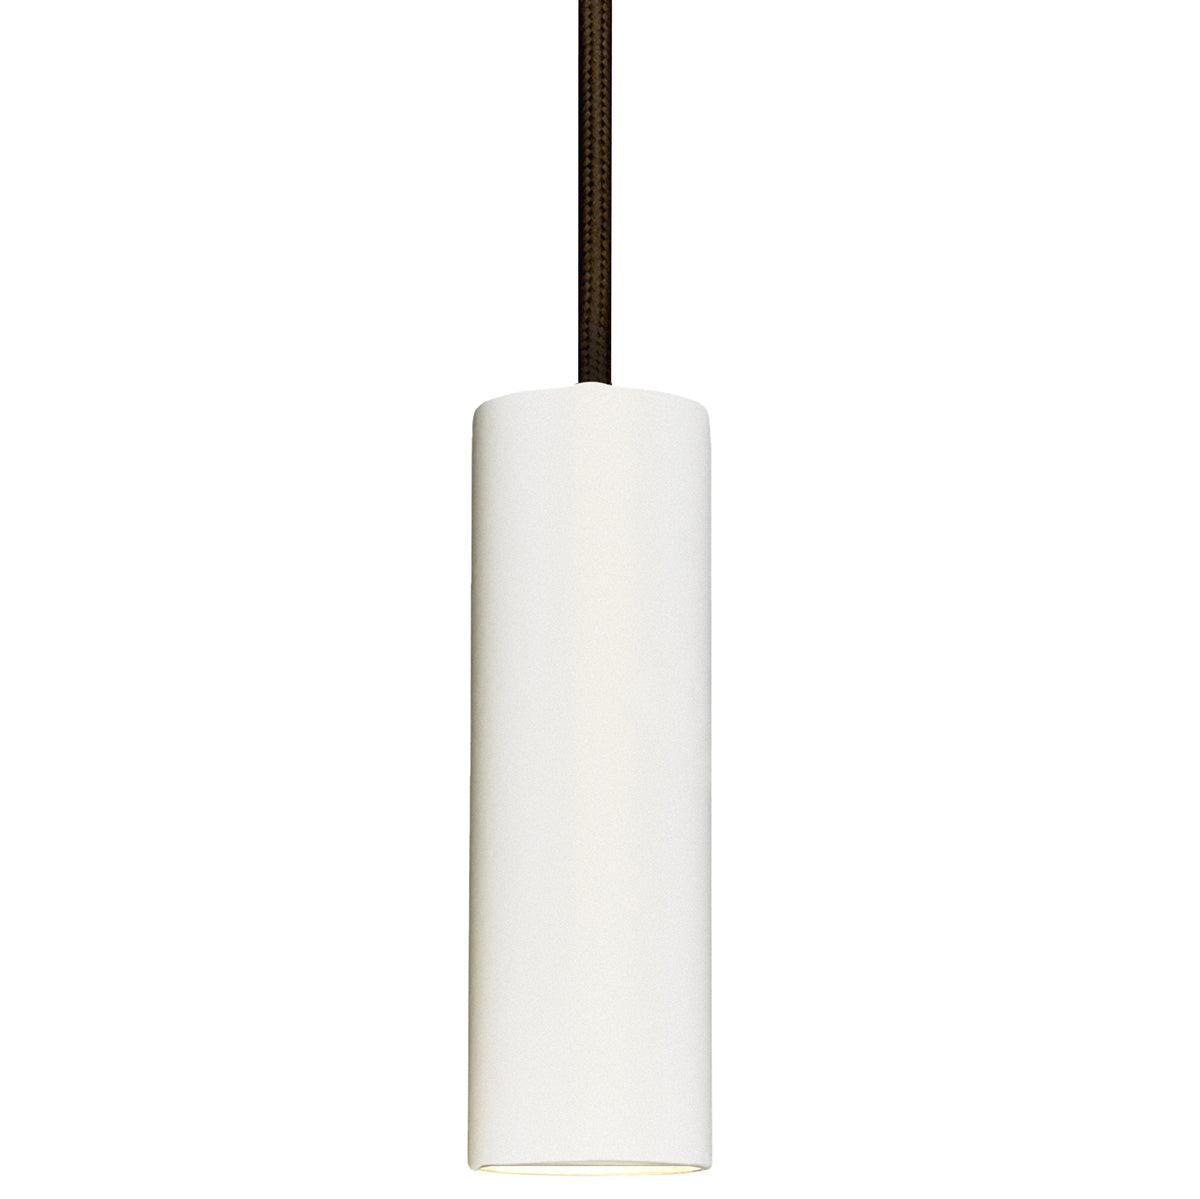 Matuba LED Wall Lamp - WOO .Design